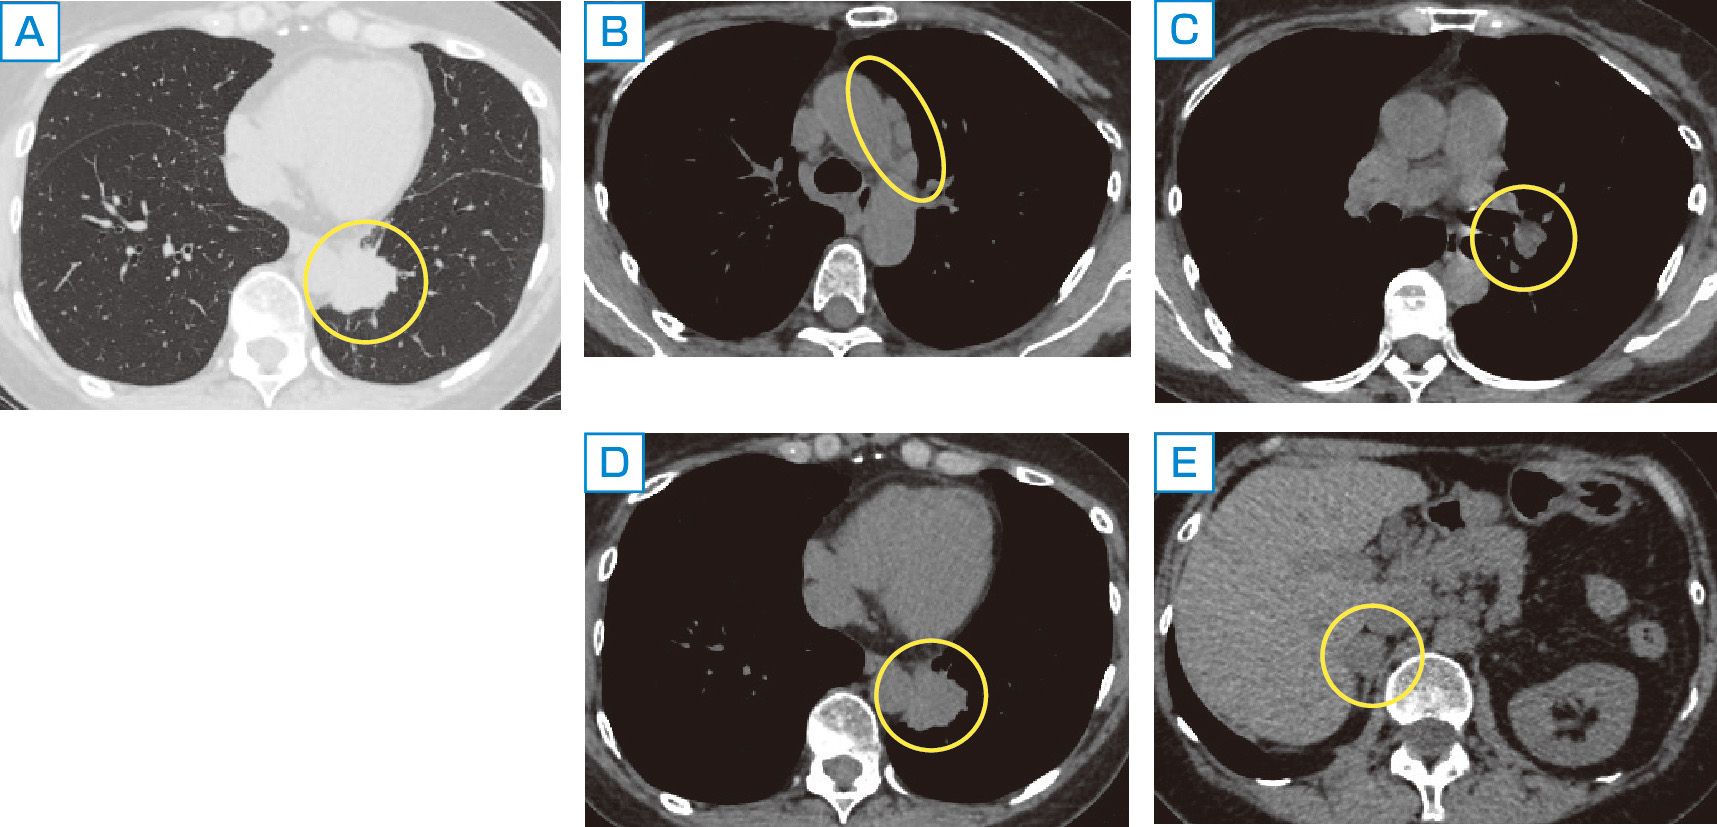 ⓔ図10-12-2　ⓔ図10-12-1と同一症例の胸部CT像 A：肺野条件における下行大動脈に接する原発巣．以下縦隔条件におけるCT像． B：大動脈弓部外側の縦隔リンパ節転移． C：左肺門部リンパ節転移． D：原発巣． E：右副腎転移．